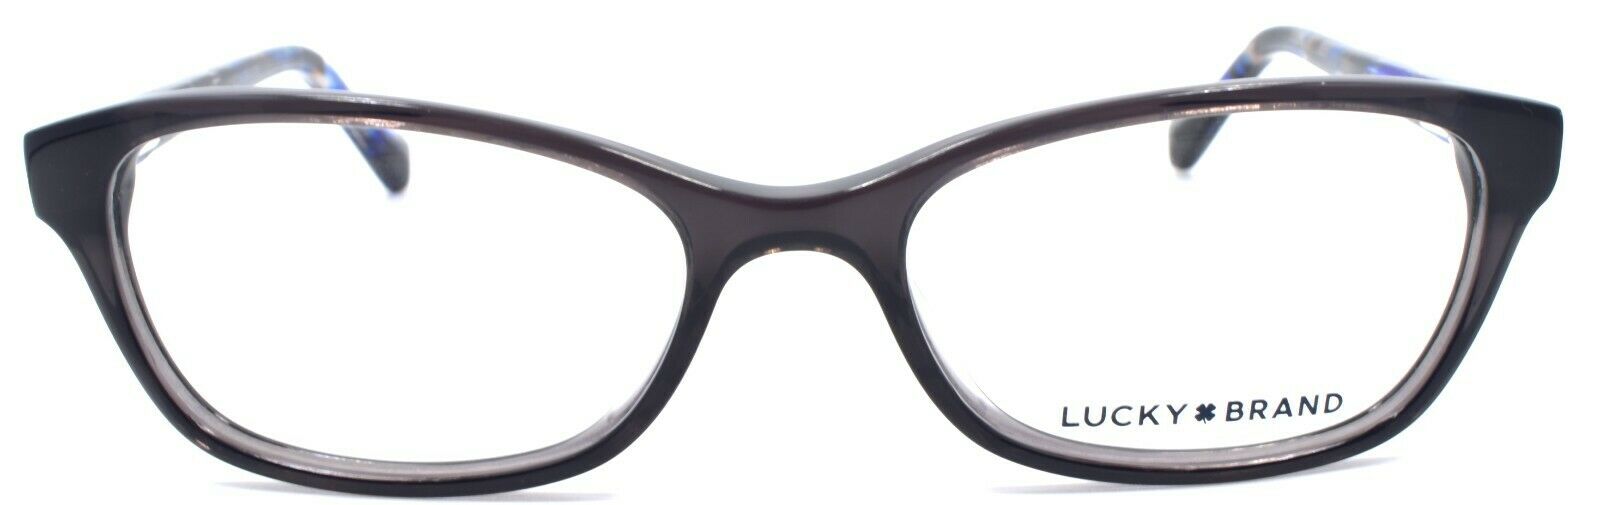 2-LUCKY BRAND D706 Kids Girls Eyeglasses Frames 49-16-130 Grey-751286295764-IKSpecs